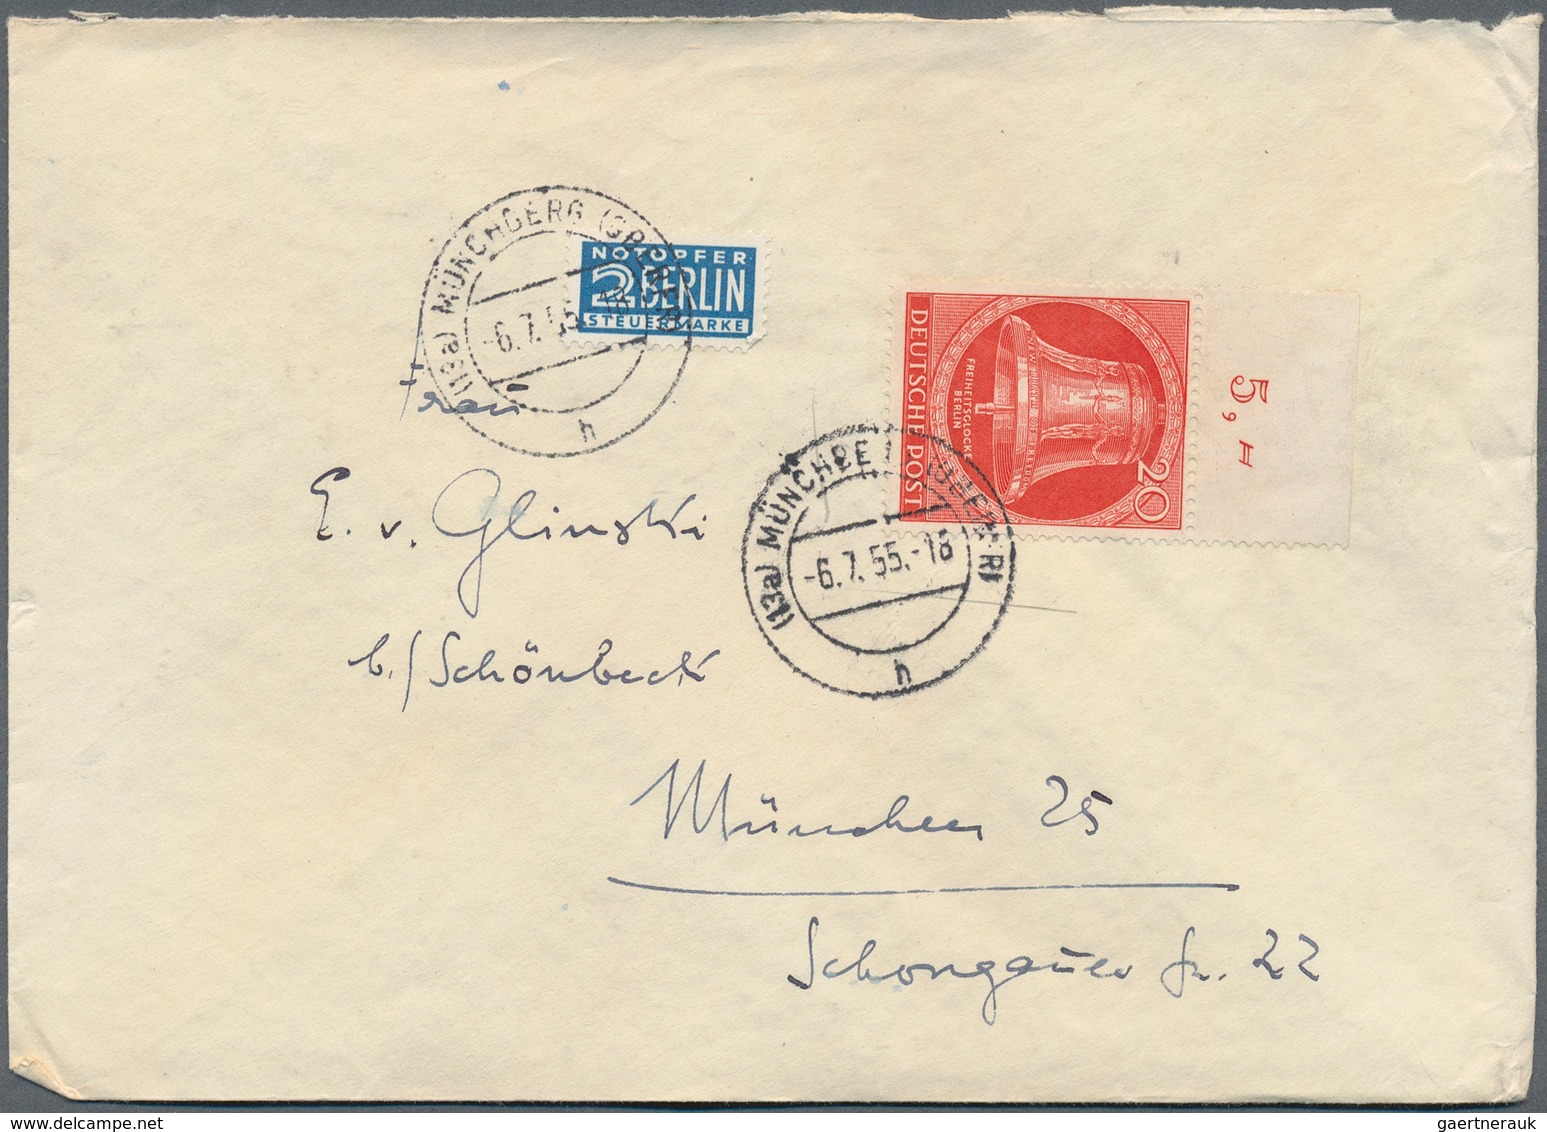 32511 Berlin: 1952/1960, vielseitiger Posten von ca. 195 Briefen und Karten aus alter Familien-Korresponde